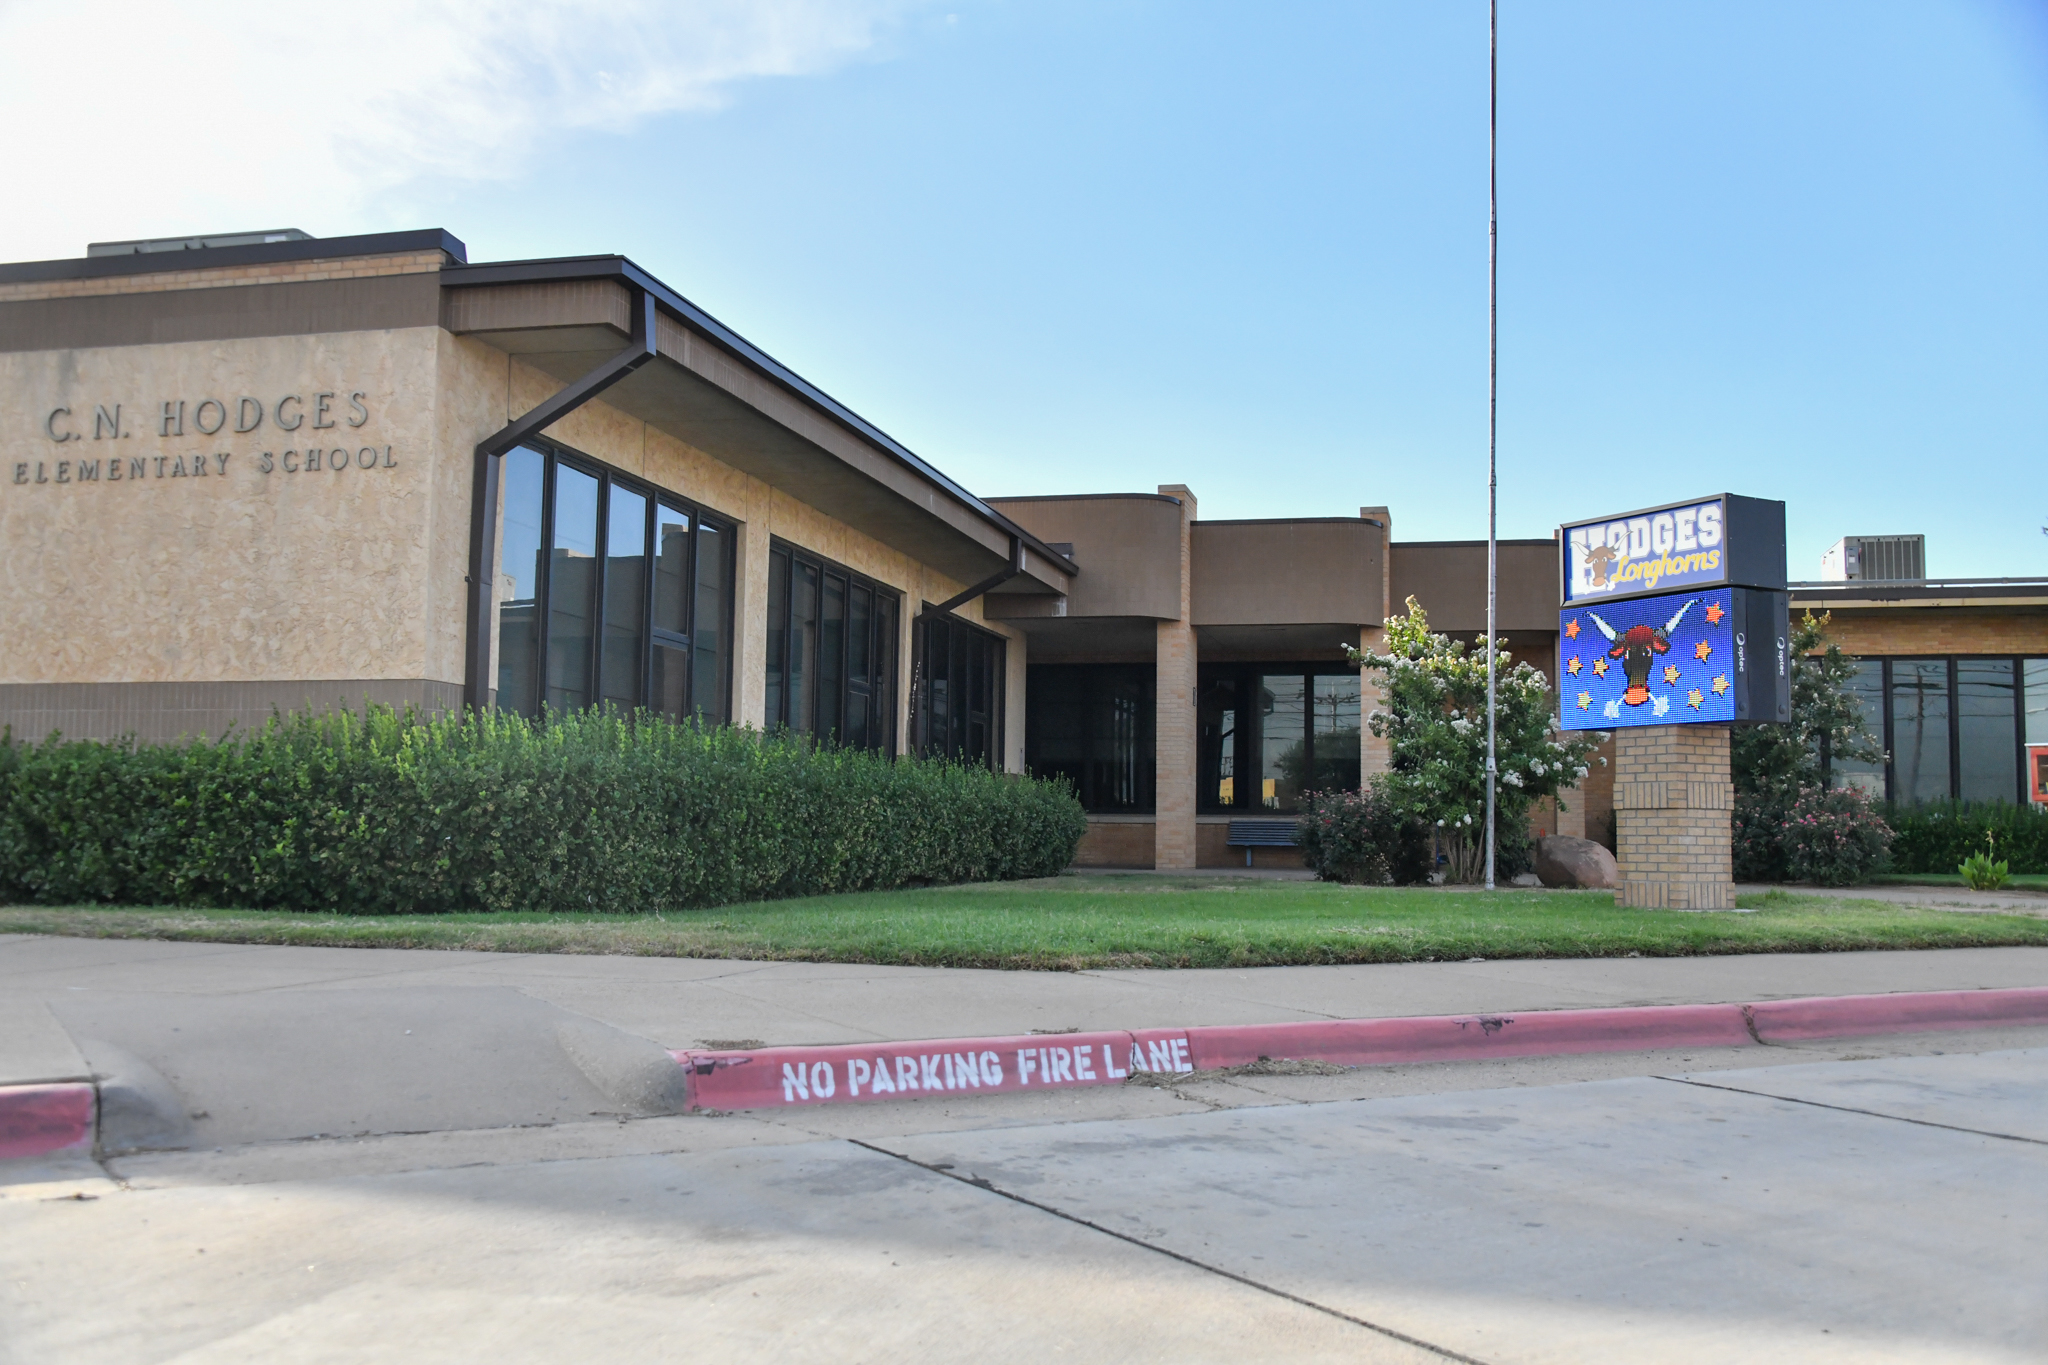 Hodges Elementary School